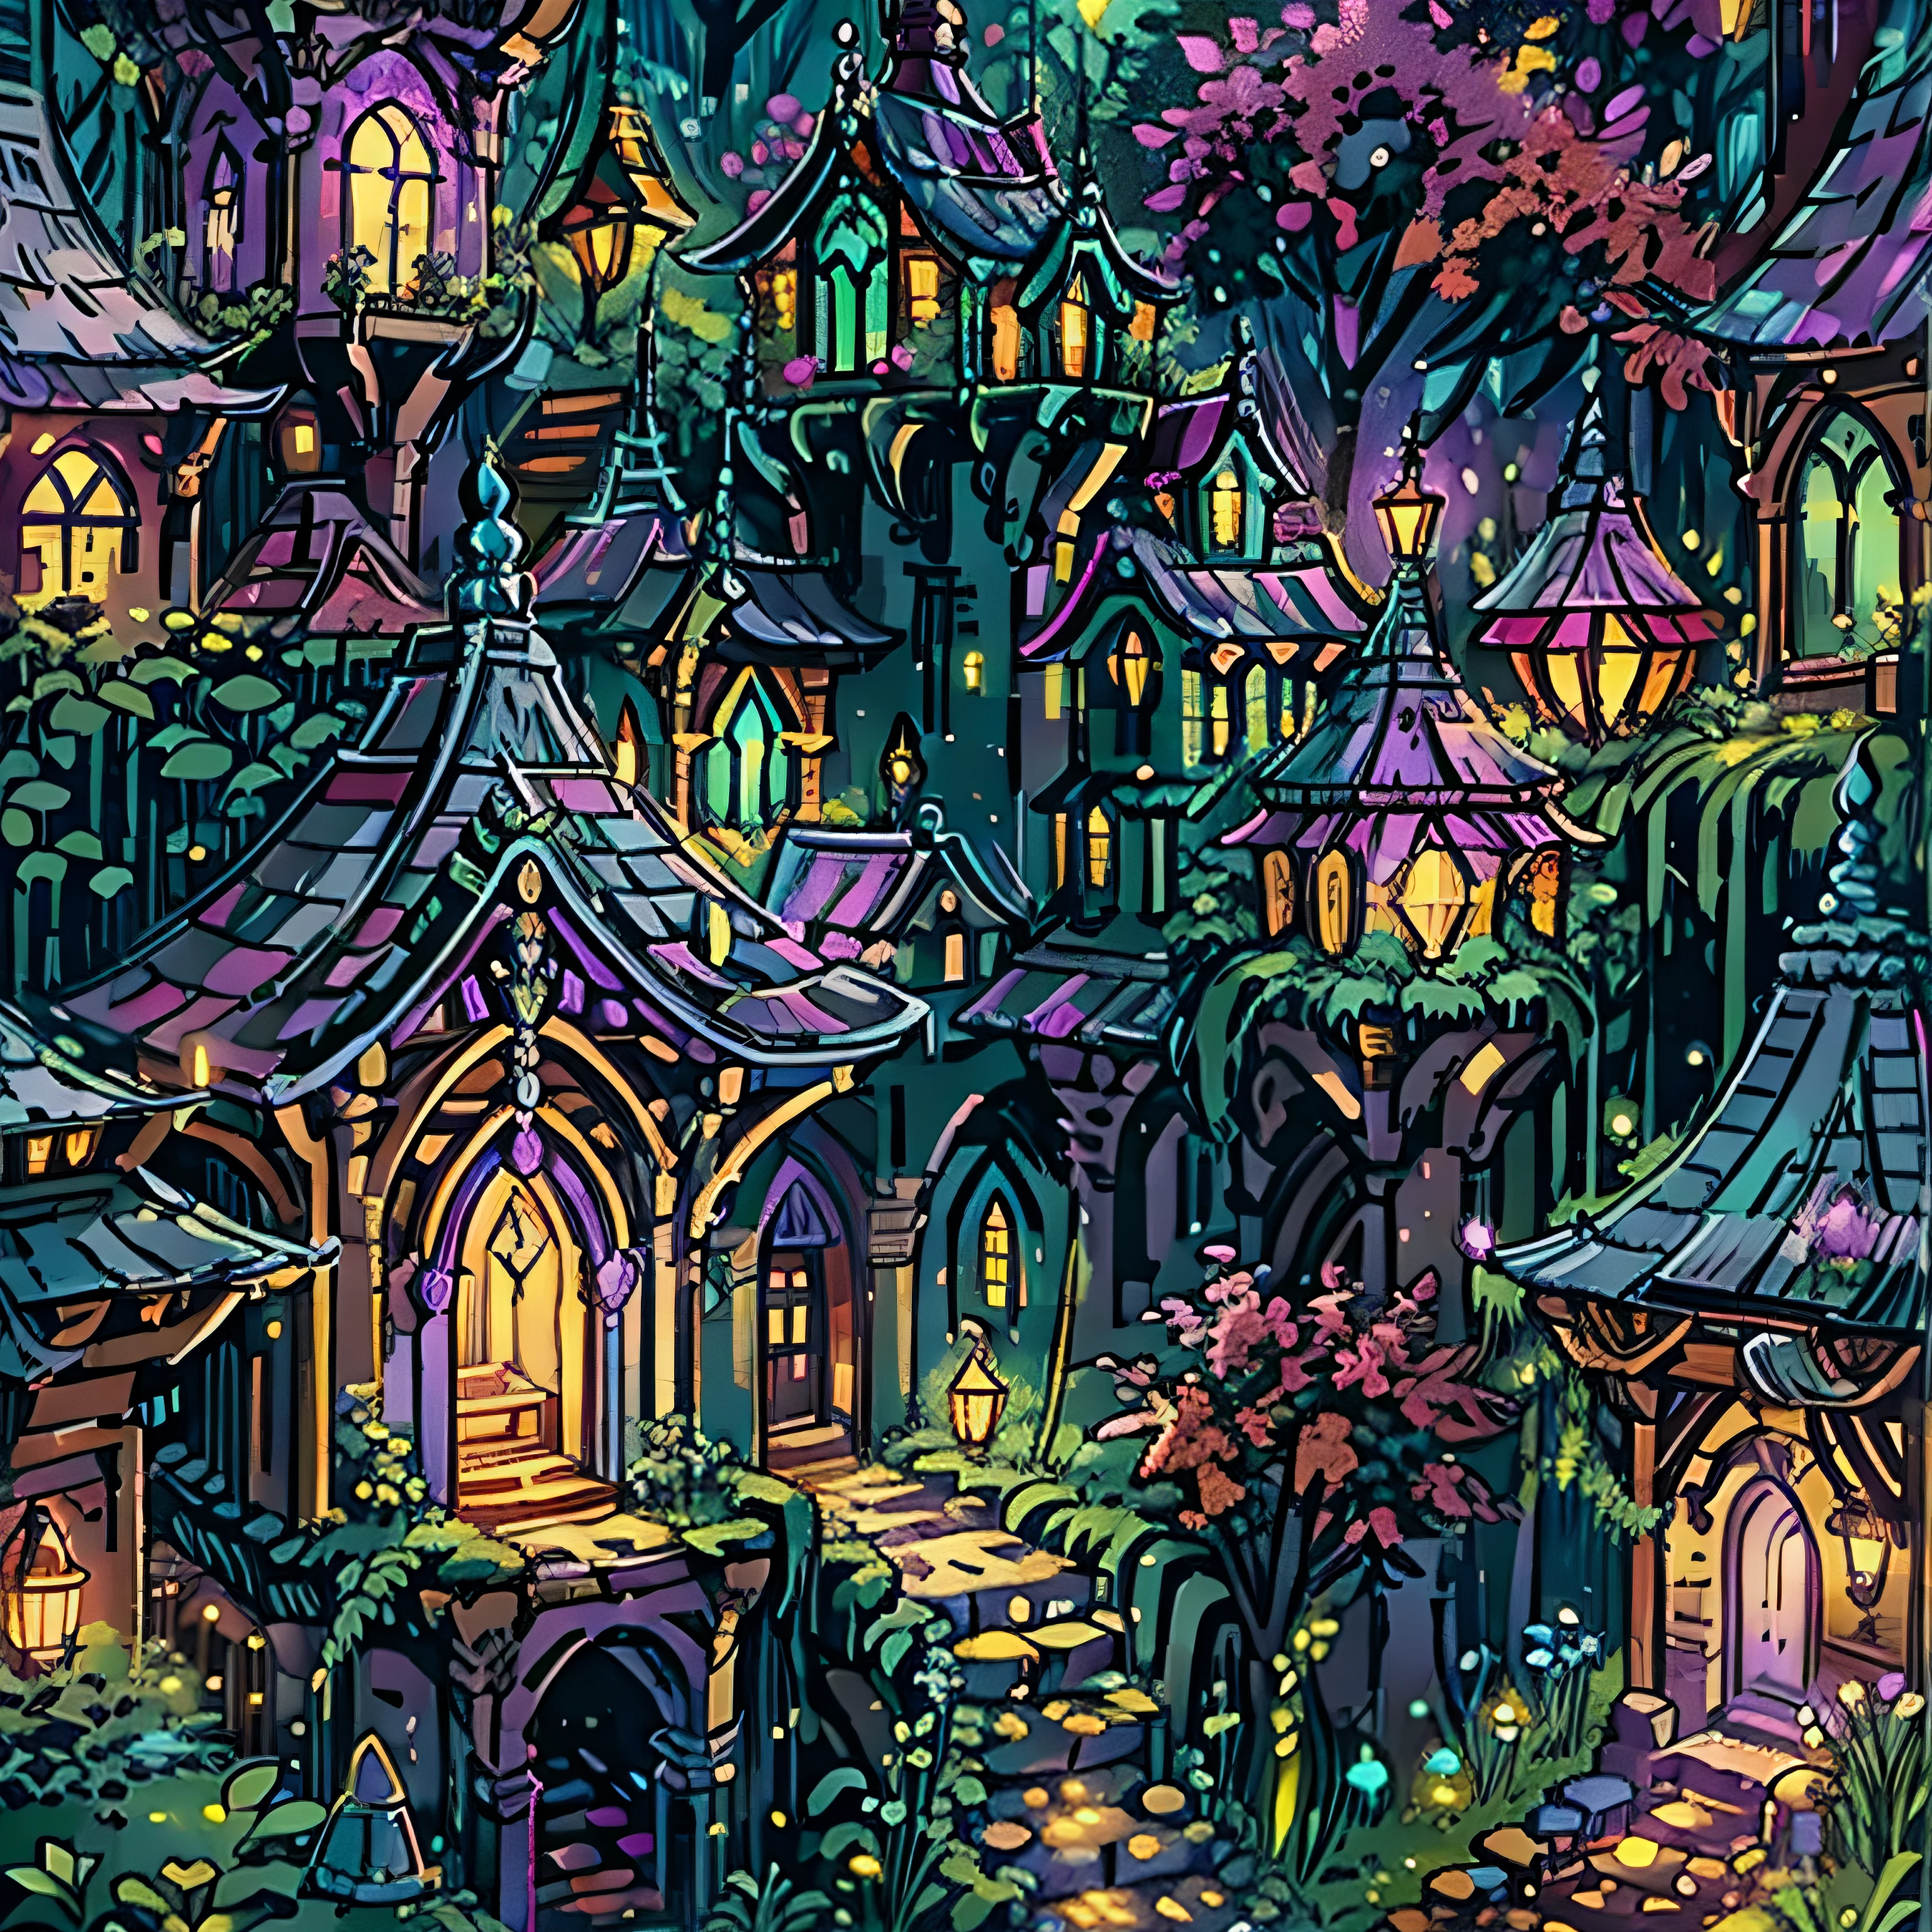 마법의 숲 속에 자리잡은 엘프 도시의 복잡하게 디자인된 주택의 세부 묘사, 부드러운 조명으로, 고혹적인 느낌을 주는 보라색 빛. 조용하고 평화로운 곳, 안정감을 선사하는."